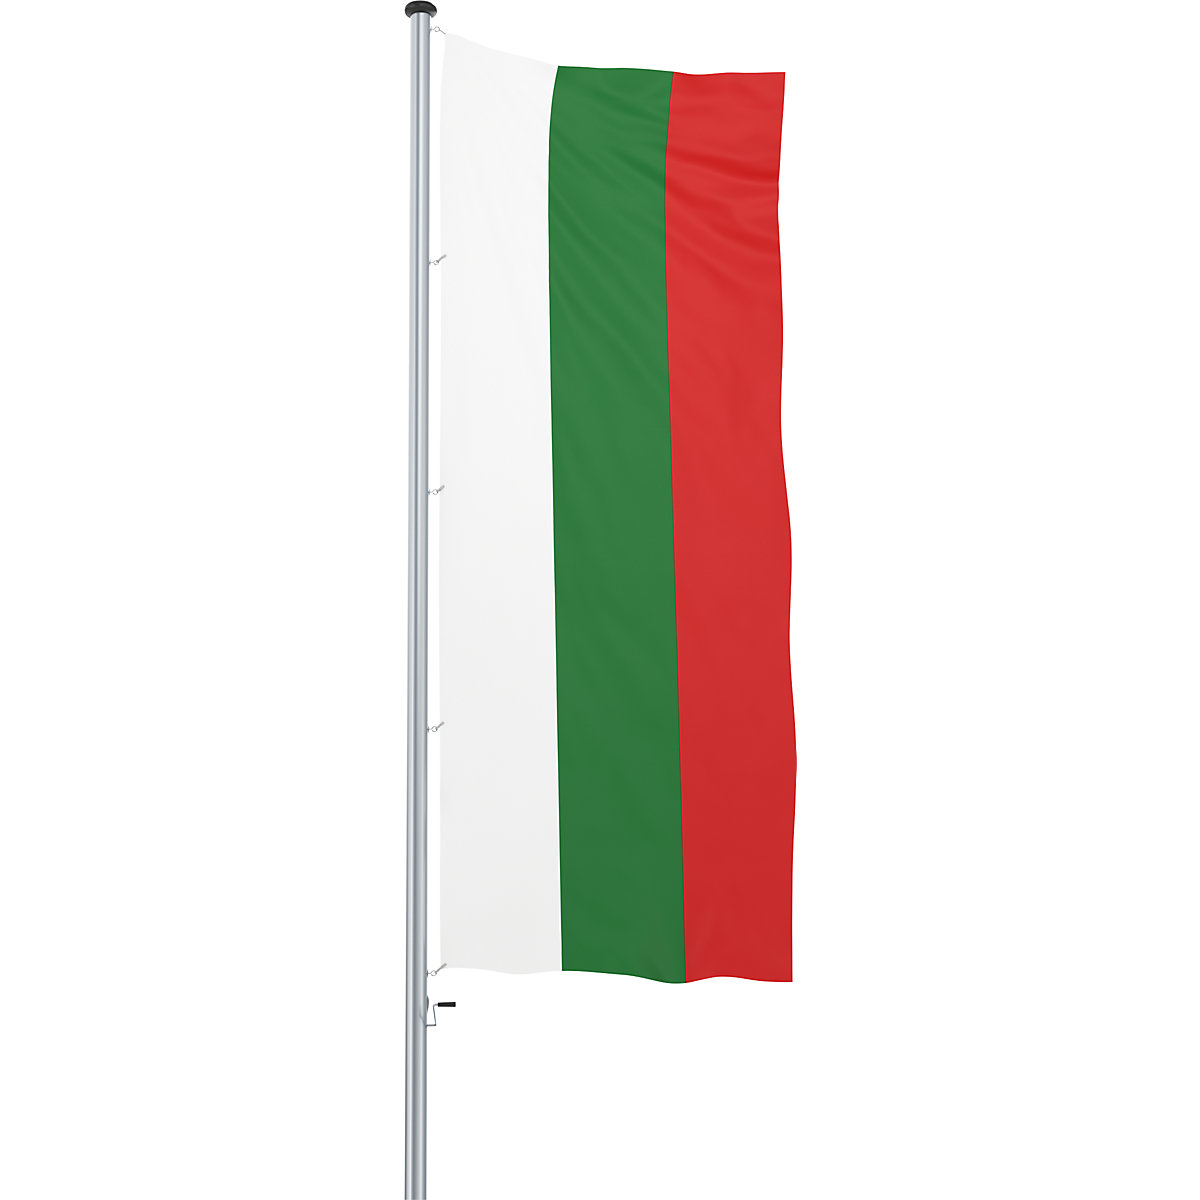 Mannus – Bandera para izar/bandera del país (Imagen del producto 52)